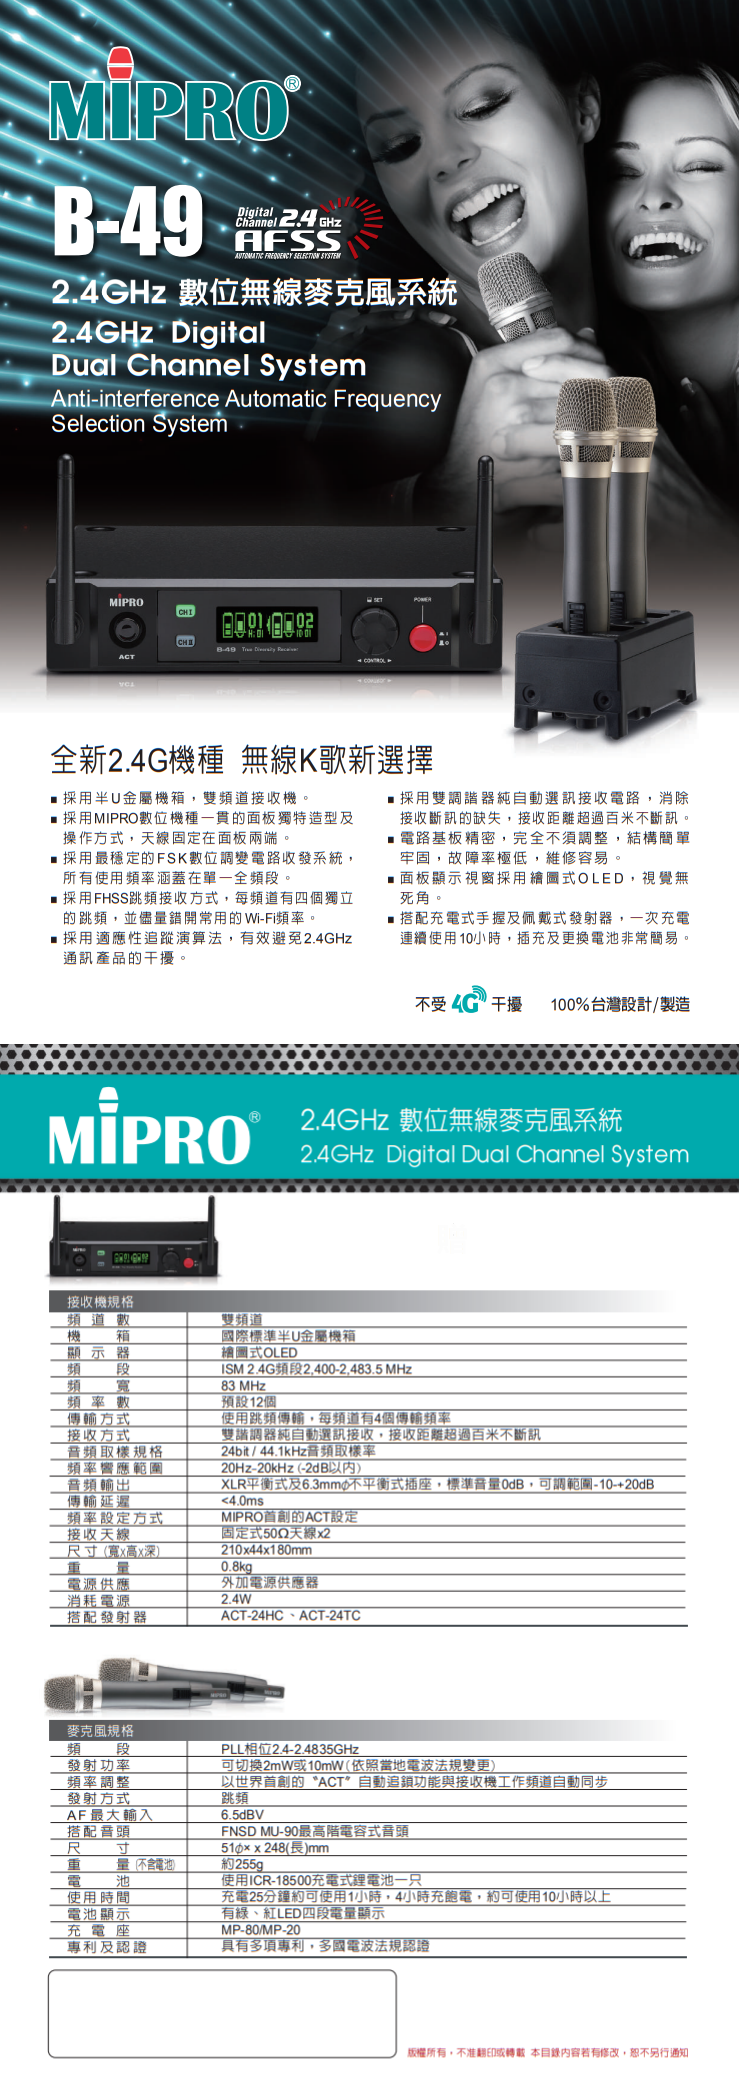 永悅音響 MIPRO B-49 2.4G數位雙頻無線麥克風 全新公司貨 歡迎+即時通詢問 免運